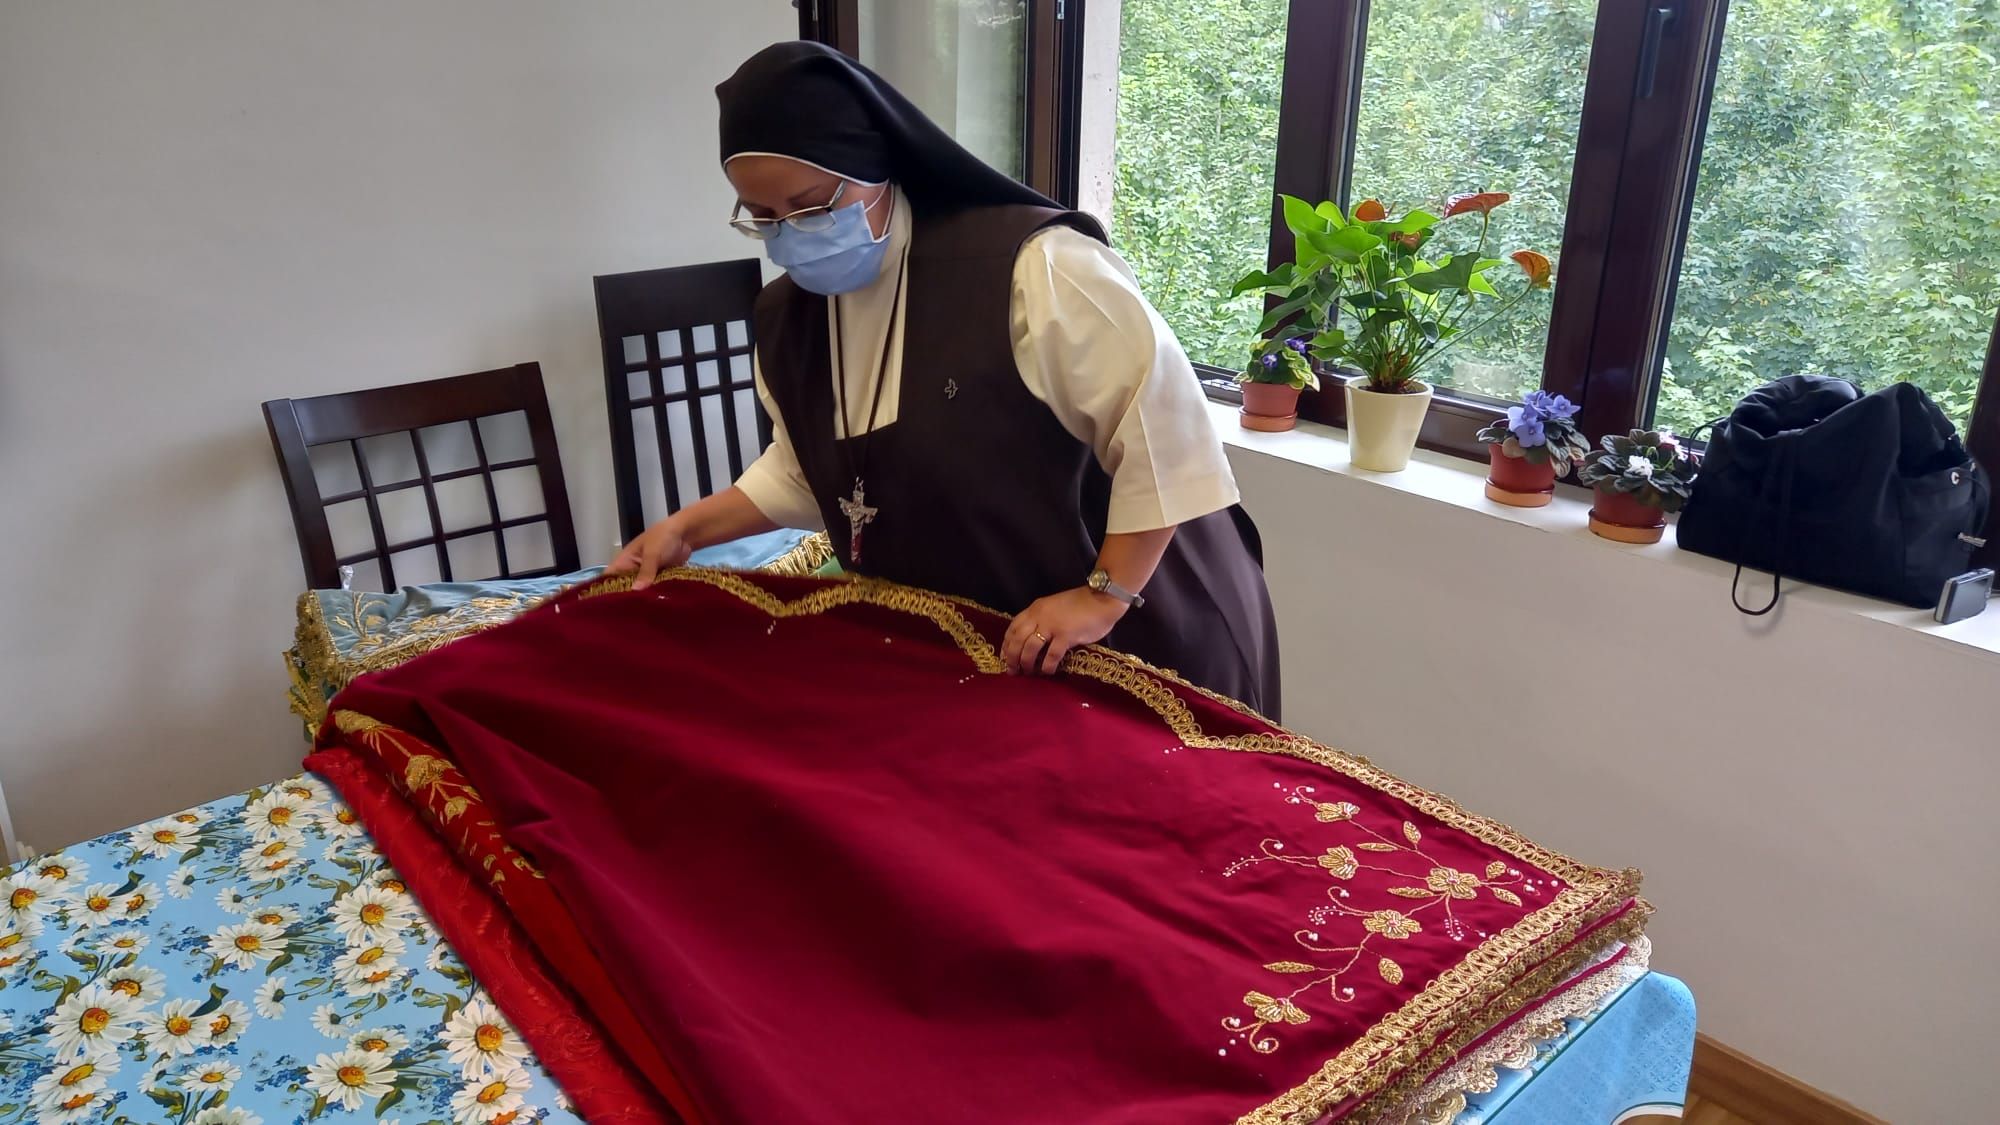 El ropero de la Santina: más de medio centenar de mantos dignos de una reina